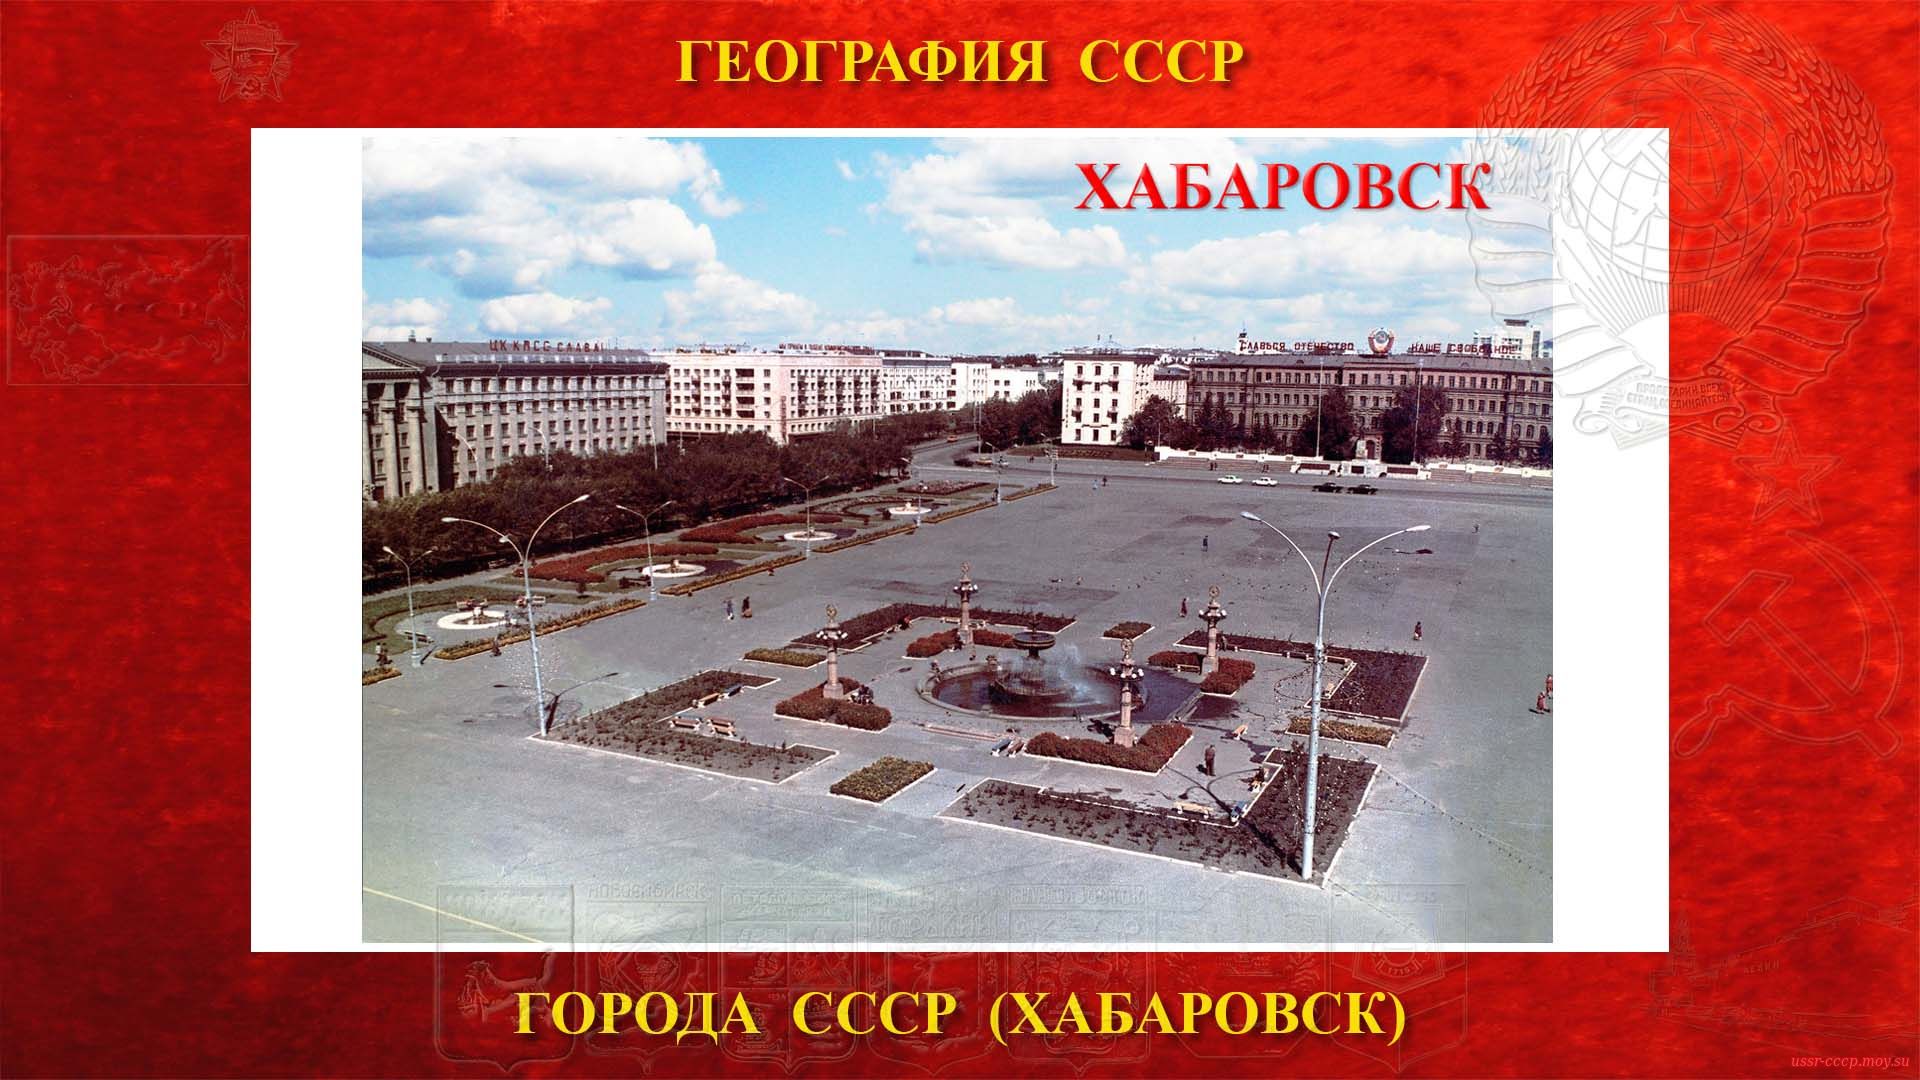 Хабаровск — Город СССР (повествование)